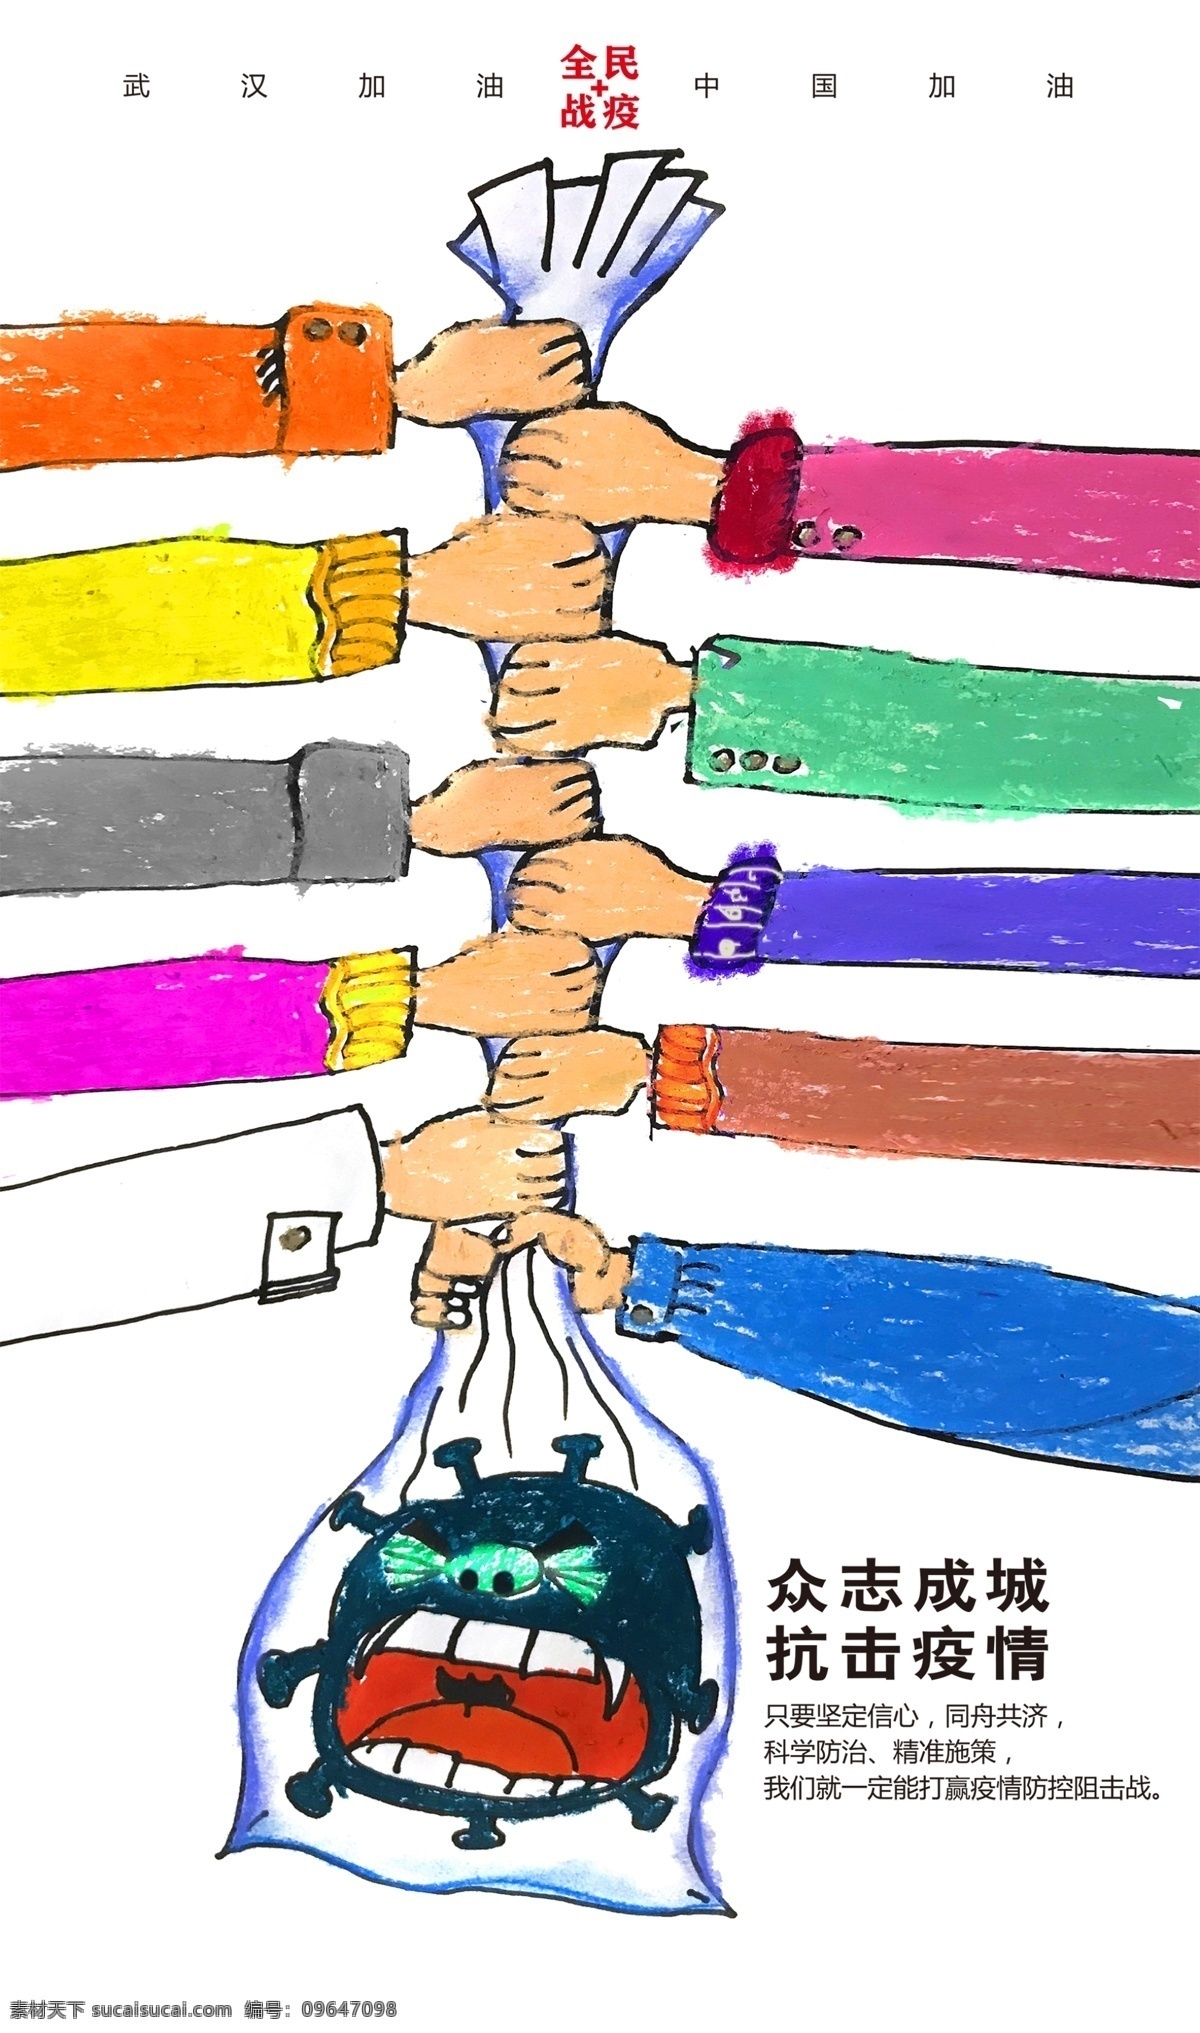 众志成城 中国加油 武汉加油 新型冠状病毒 抗击疫情 儿童画 手连手 抗疫海报